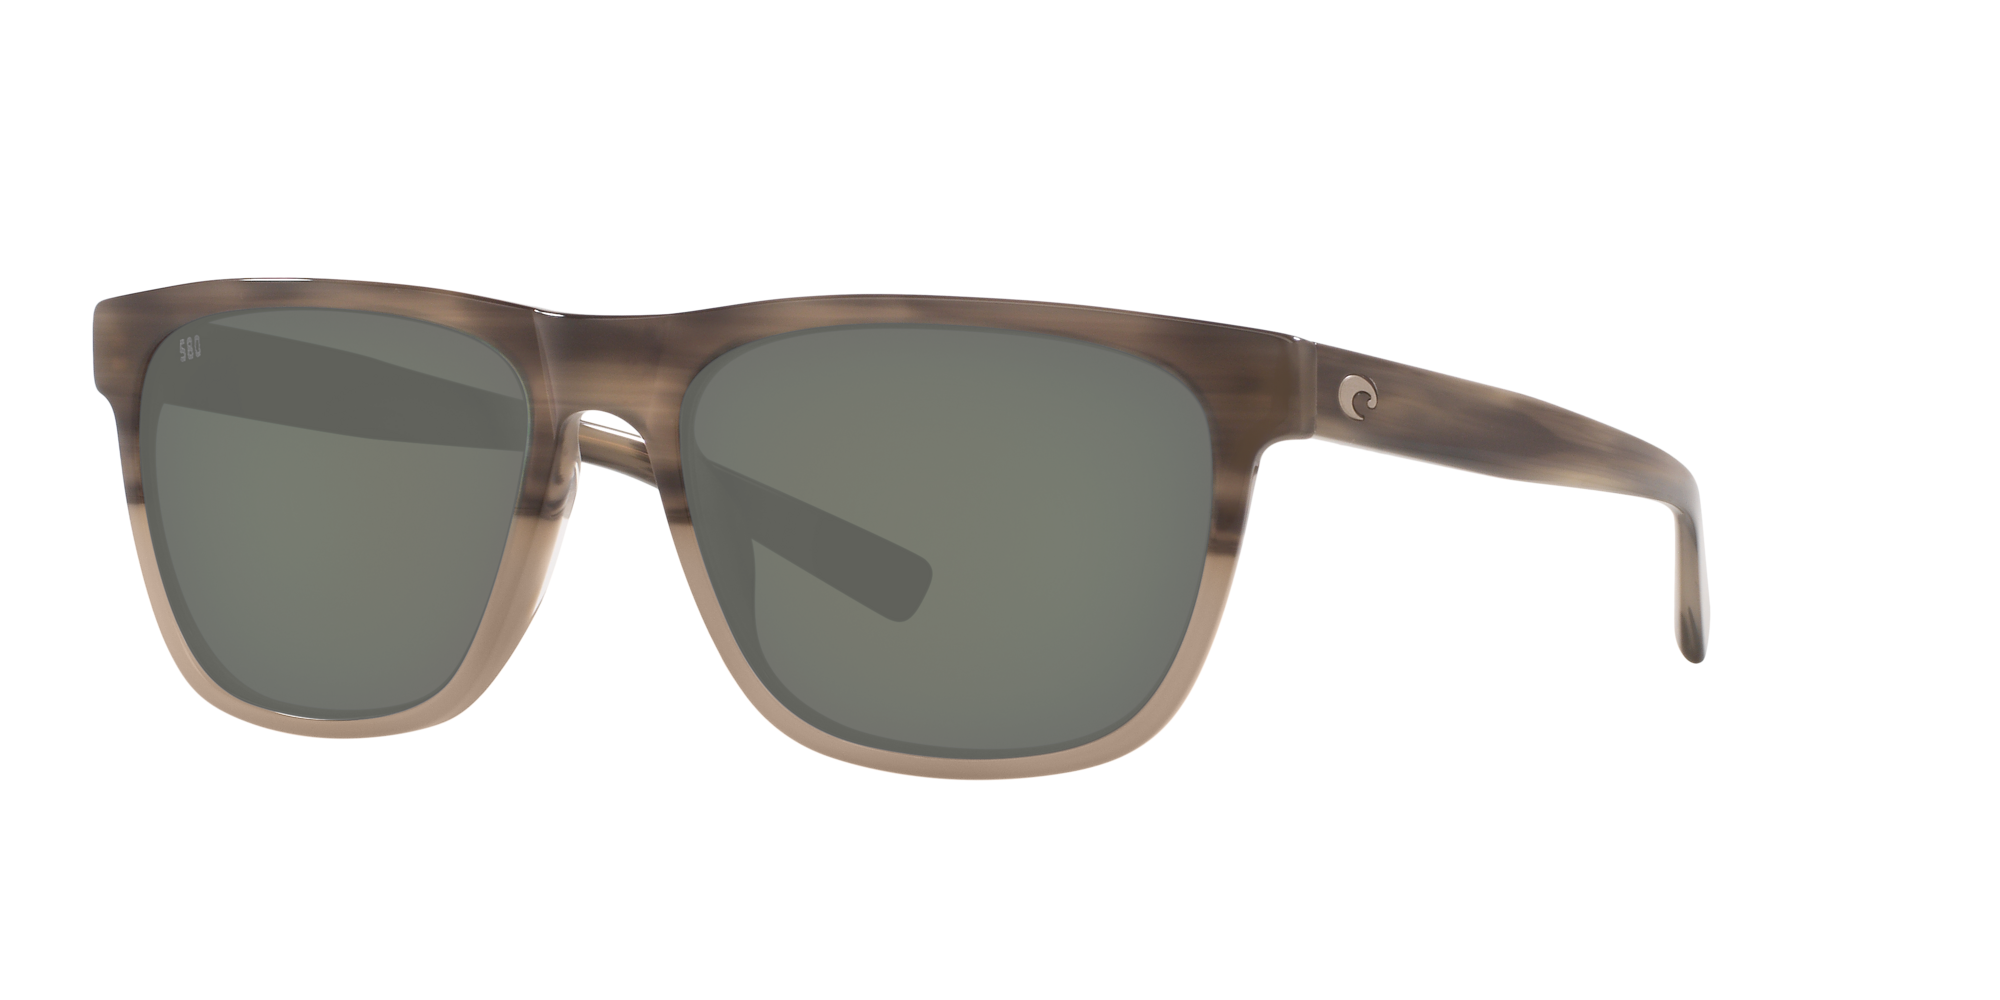 Apalach Polarized Sunglasses in Gray | Costa Del Mar®